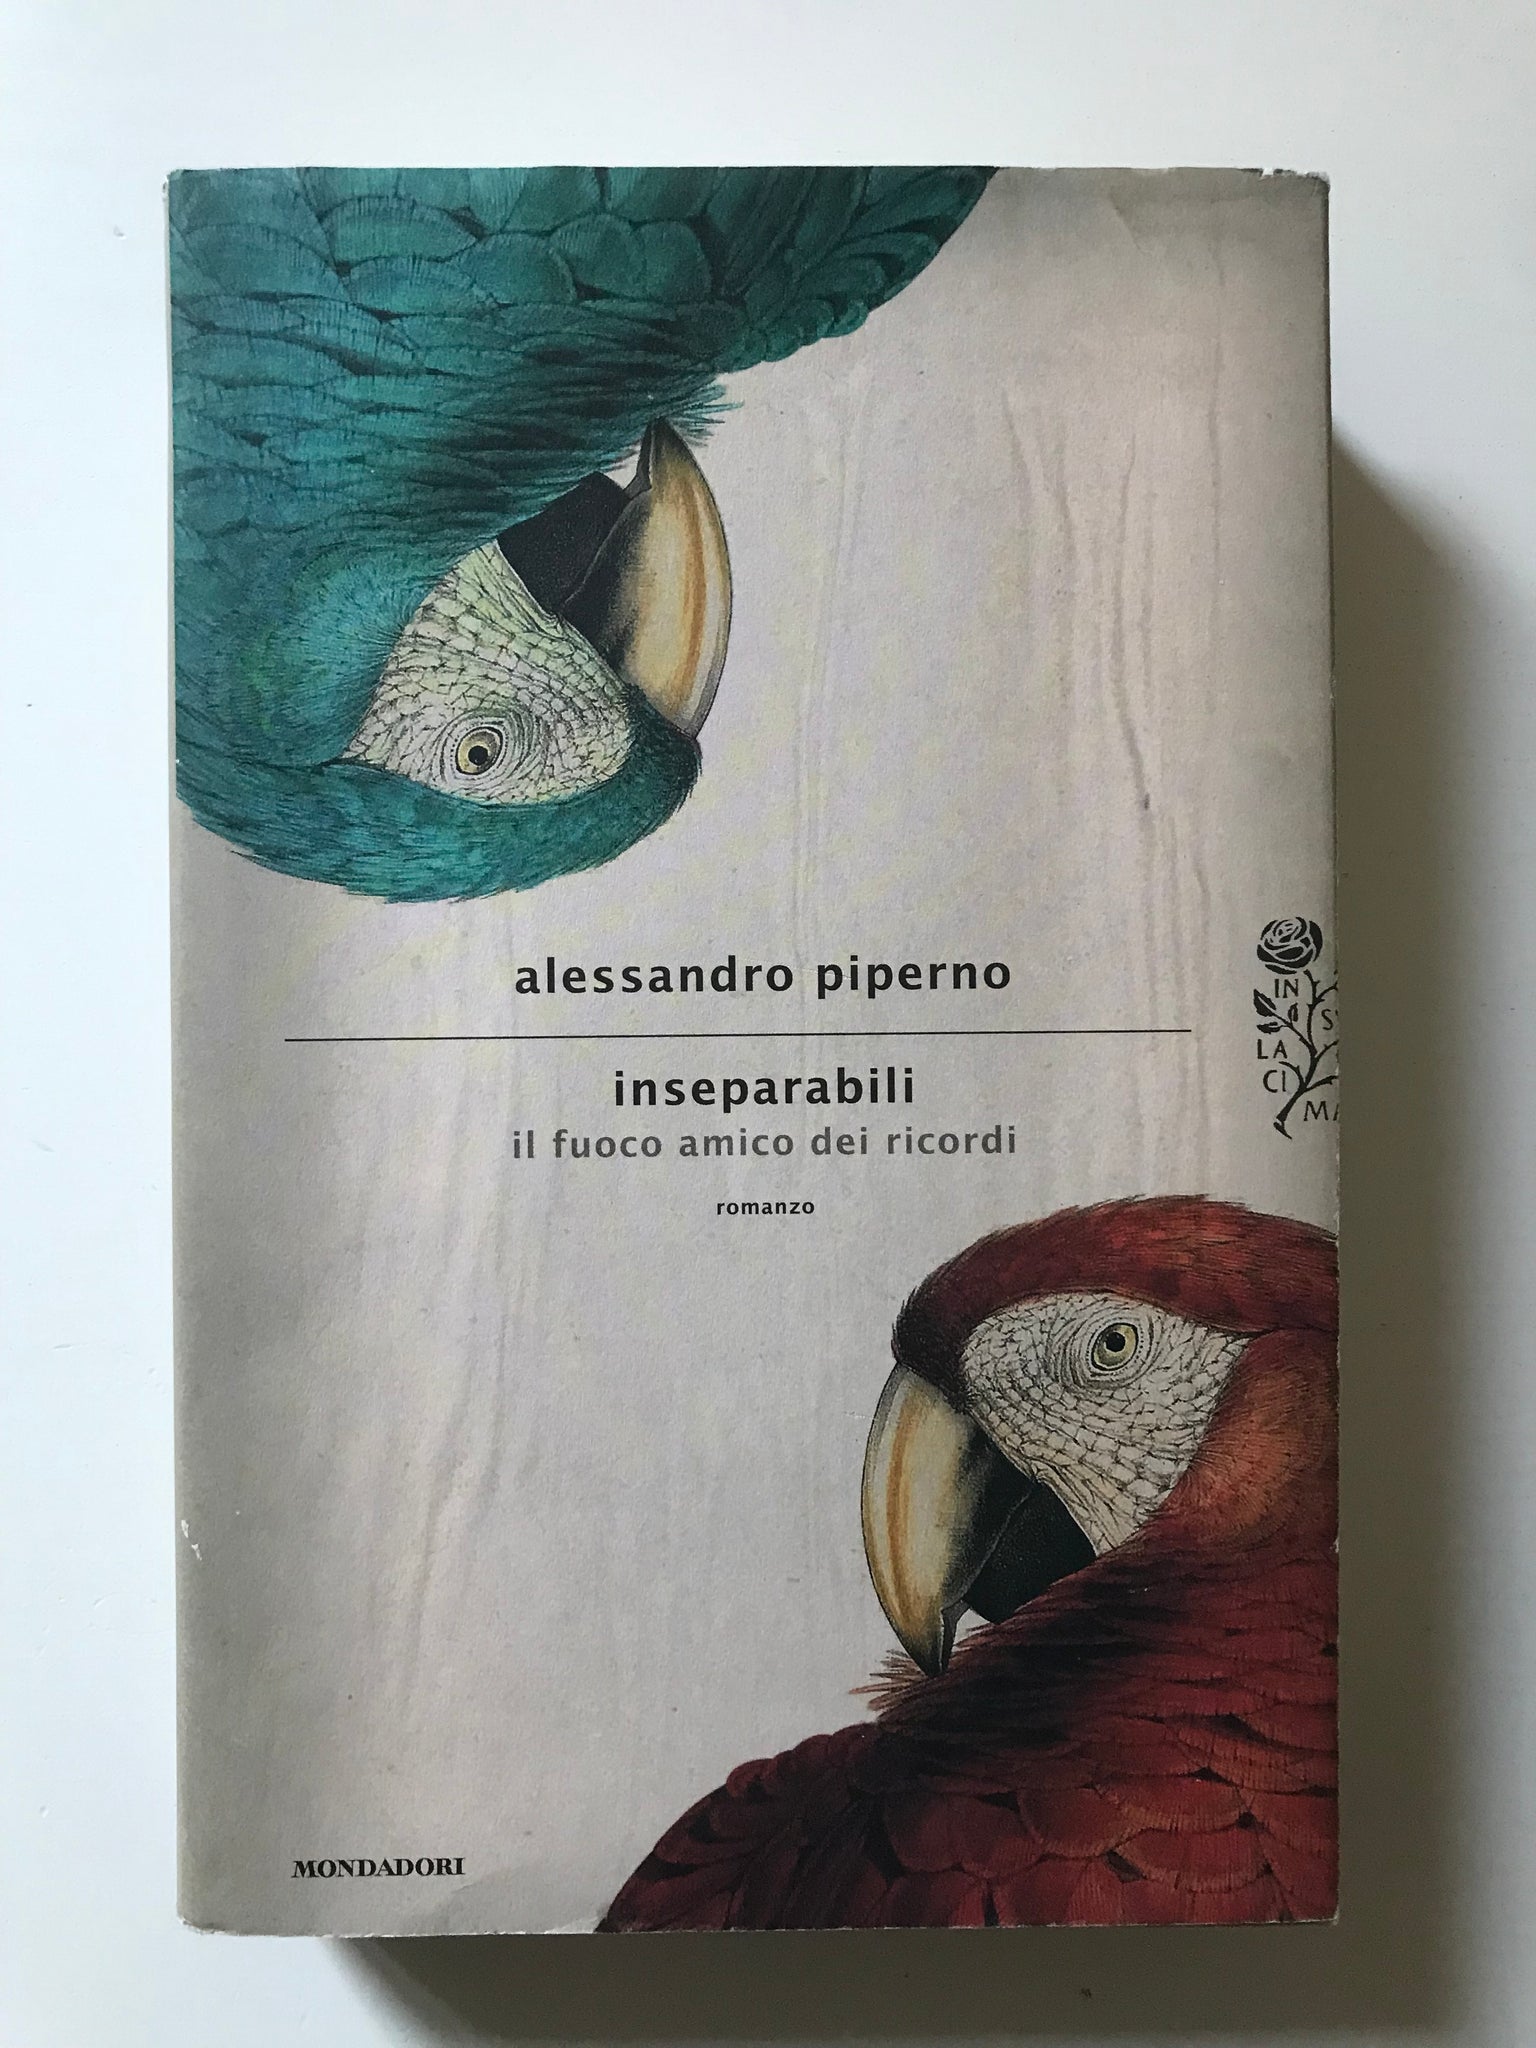 Alessandro Piperno - Inseparabili Il fuoco amico dei ricordi